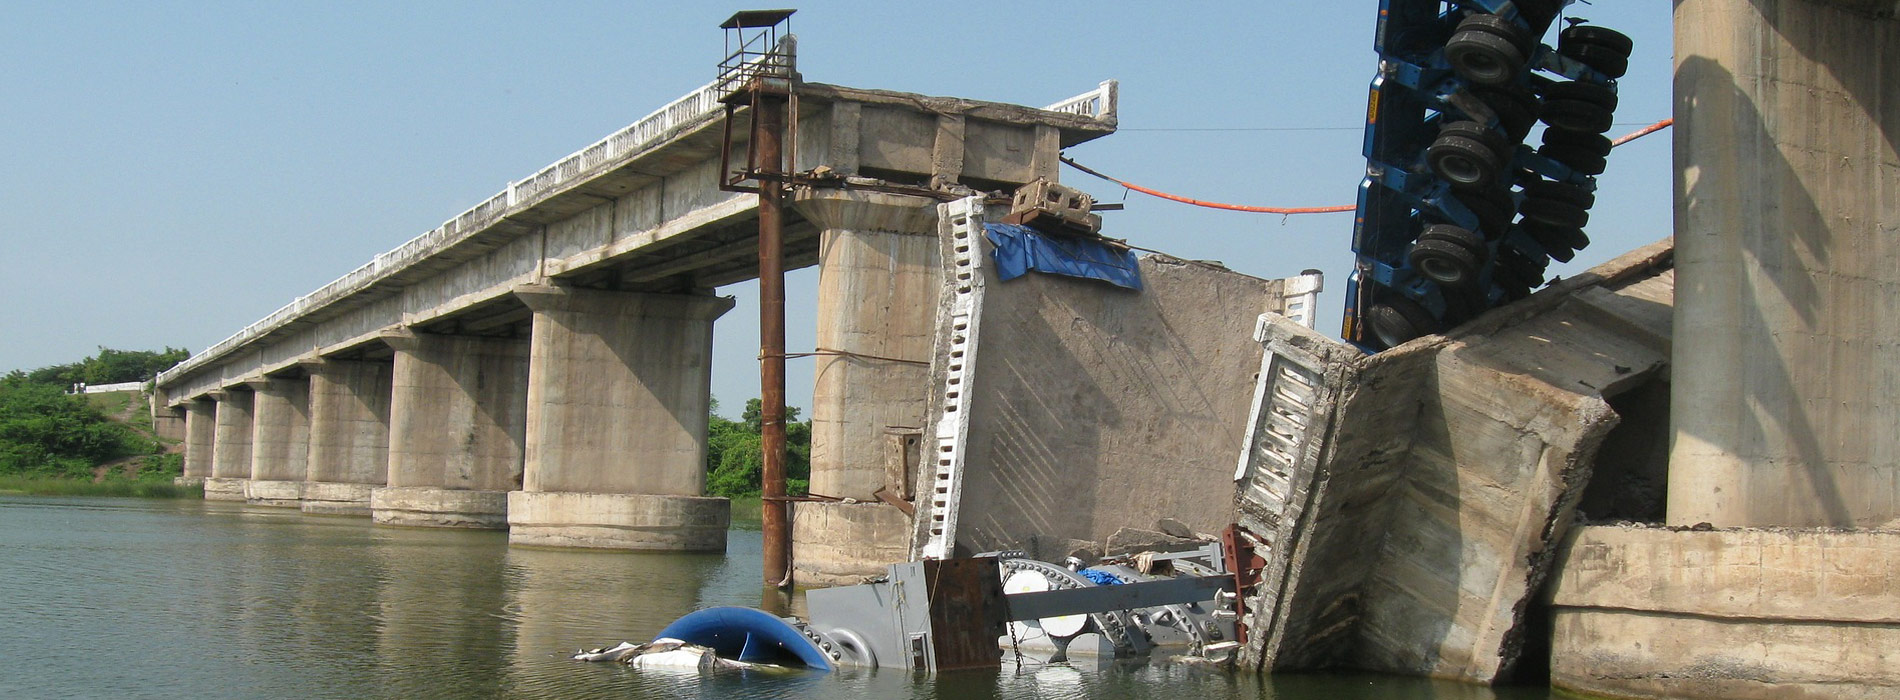 Bridge Collapsed